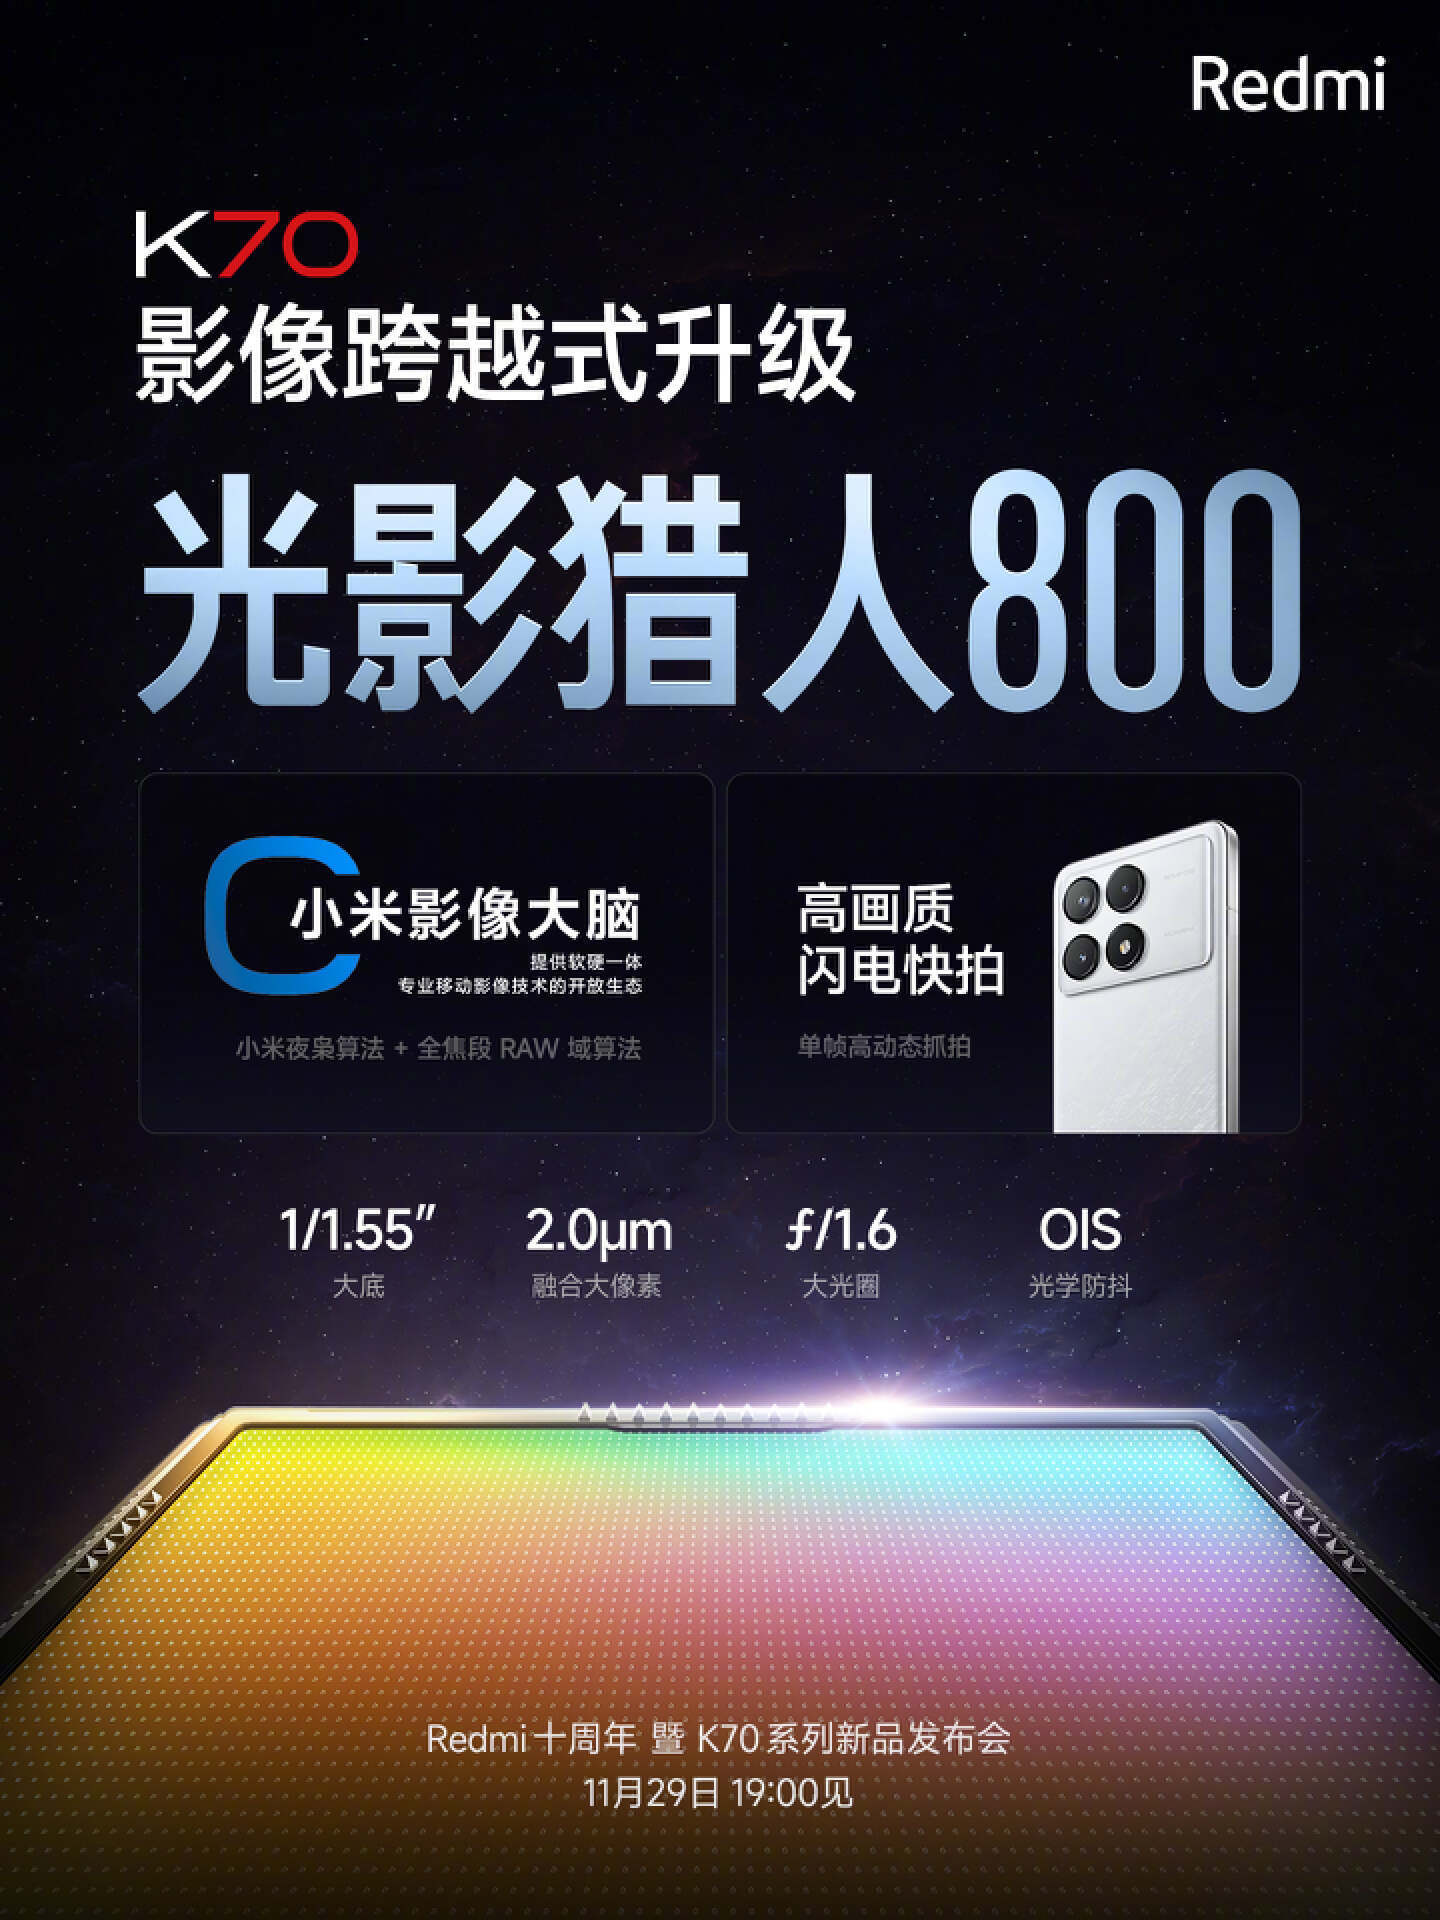 11月29日redmi红米k70系列新品发布会前瞻,三款手机配置抢先知道